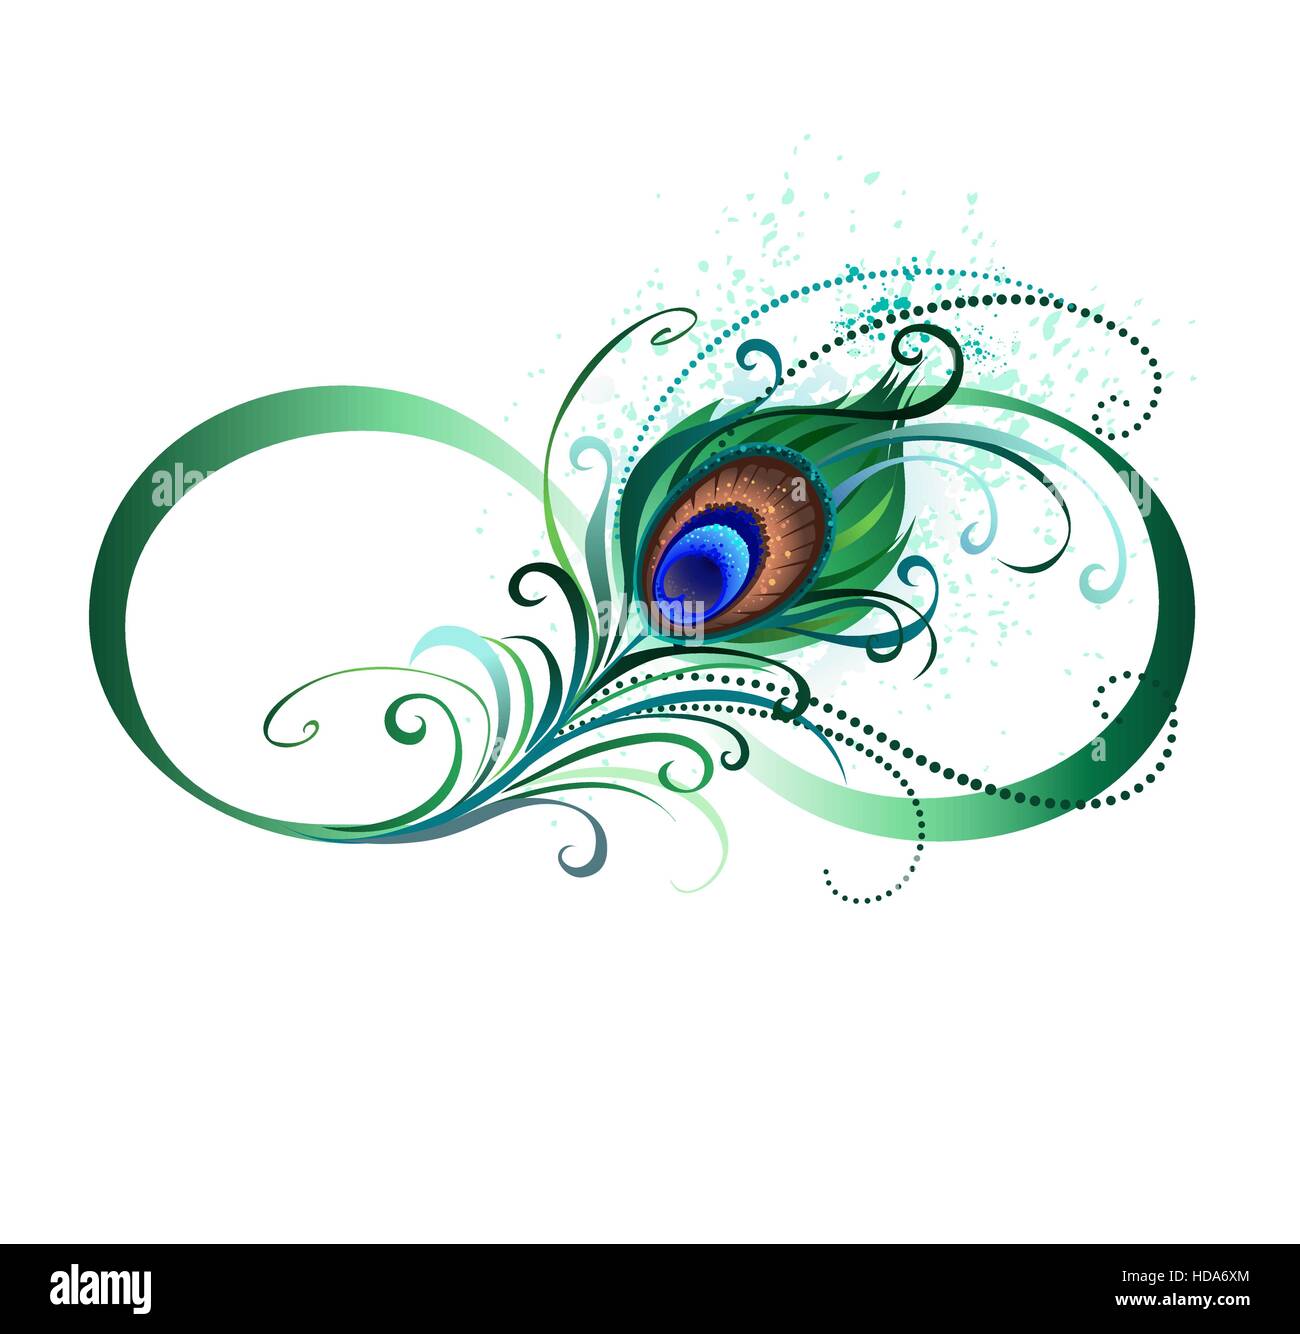 Il simbolo di infinito con un colore verde, artistico peacock giù su uno sfondo bianco. Lo stile di tatuaggio. Illustrazione Vettoriale